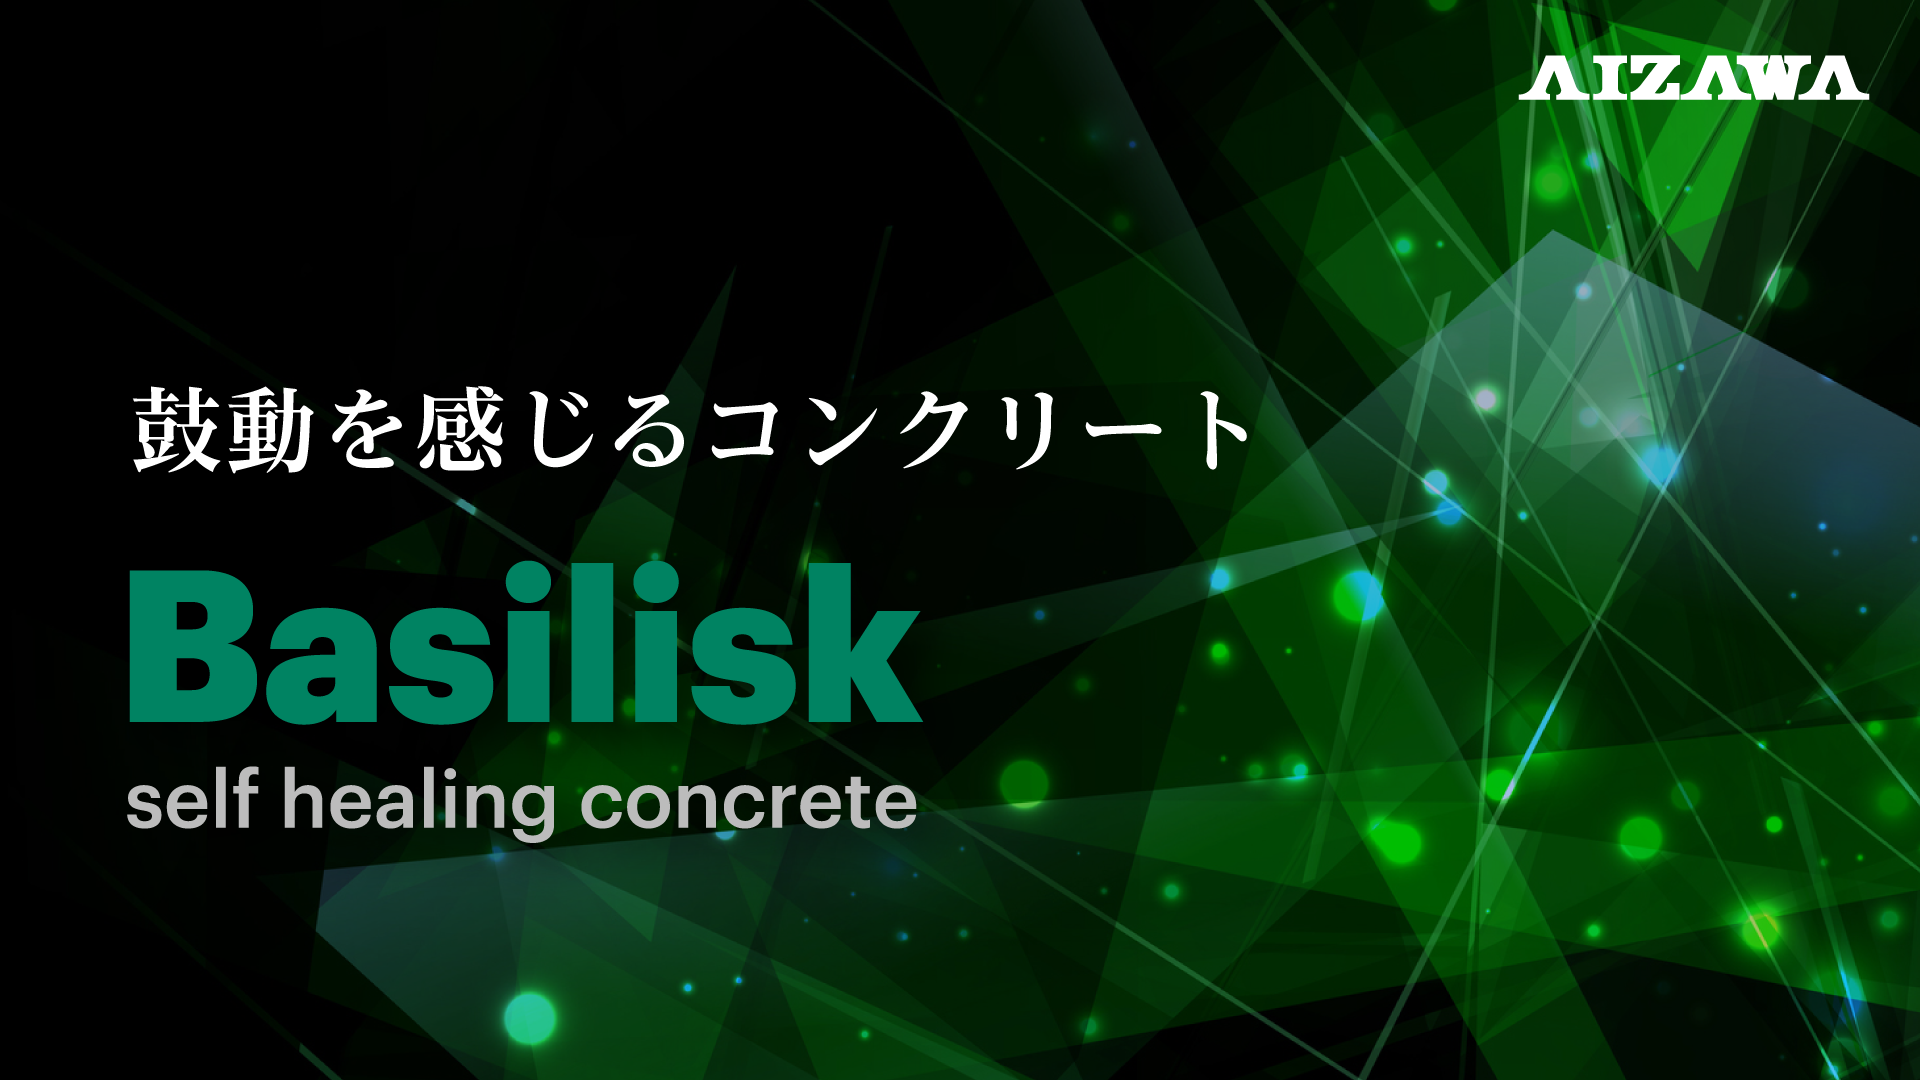 Basilisk(バジリスク) バクテリアを用いた自己治癒コンクリート技術